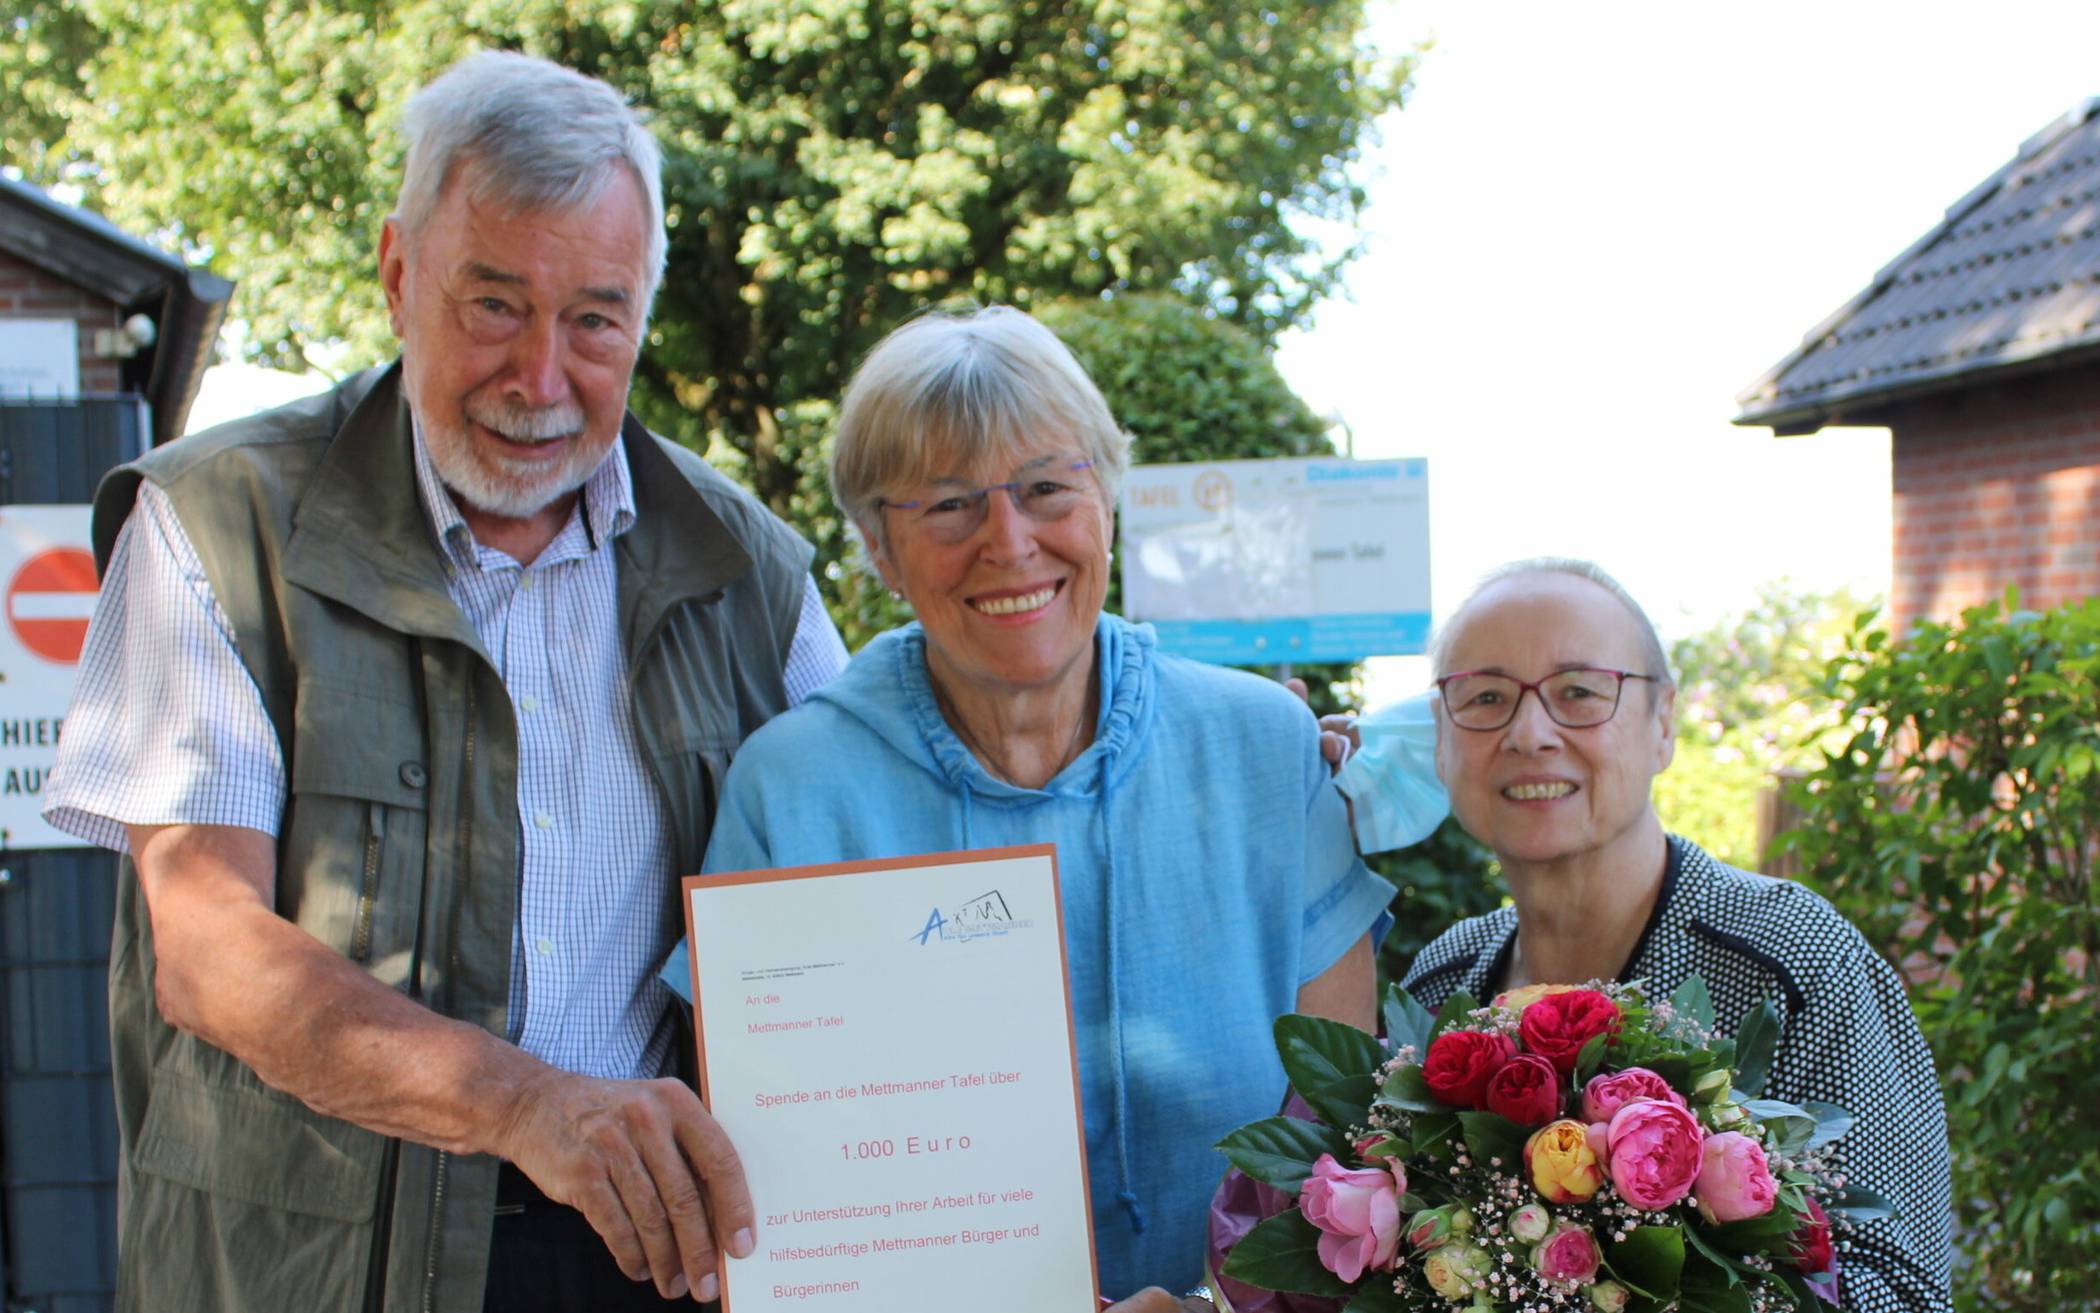  Hans Werner Lange und Anita Schäfer von den Aulen Mettmannern brachten Gisela Fleter (rechts) von der Tafel ein Blumenstrauß und einen Scheck über 1000 Euro mit. 